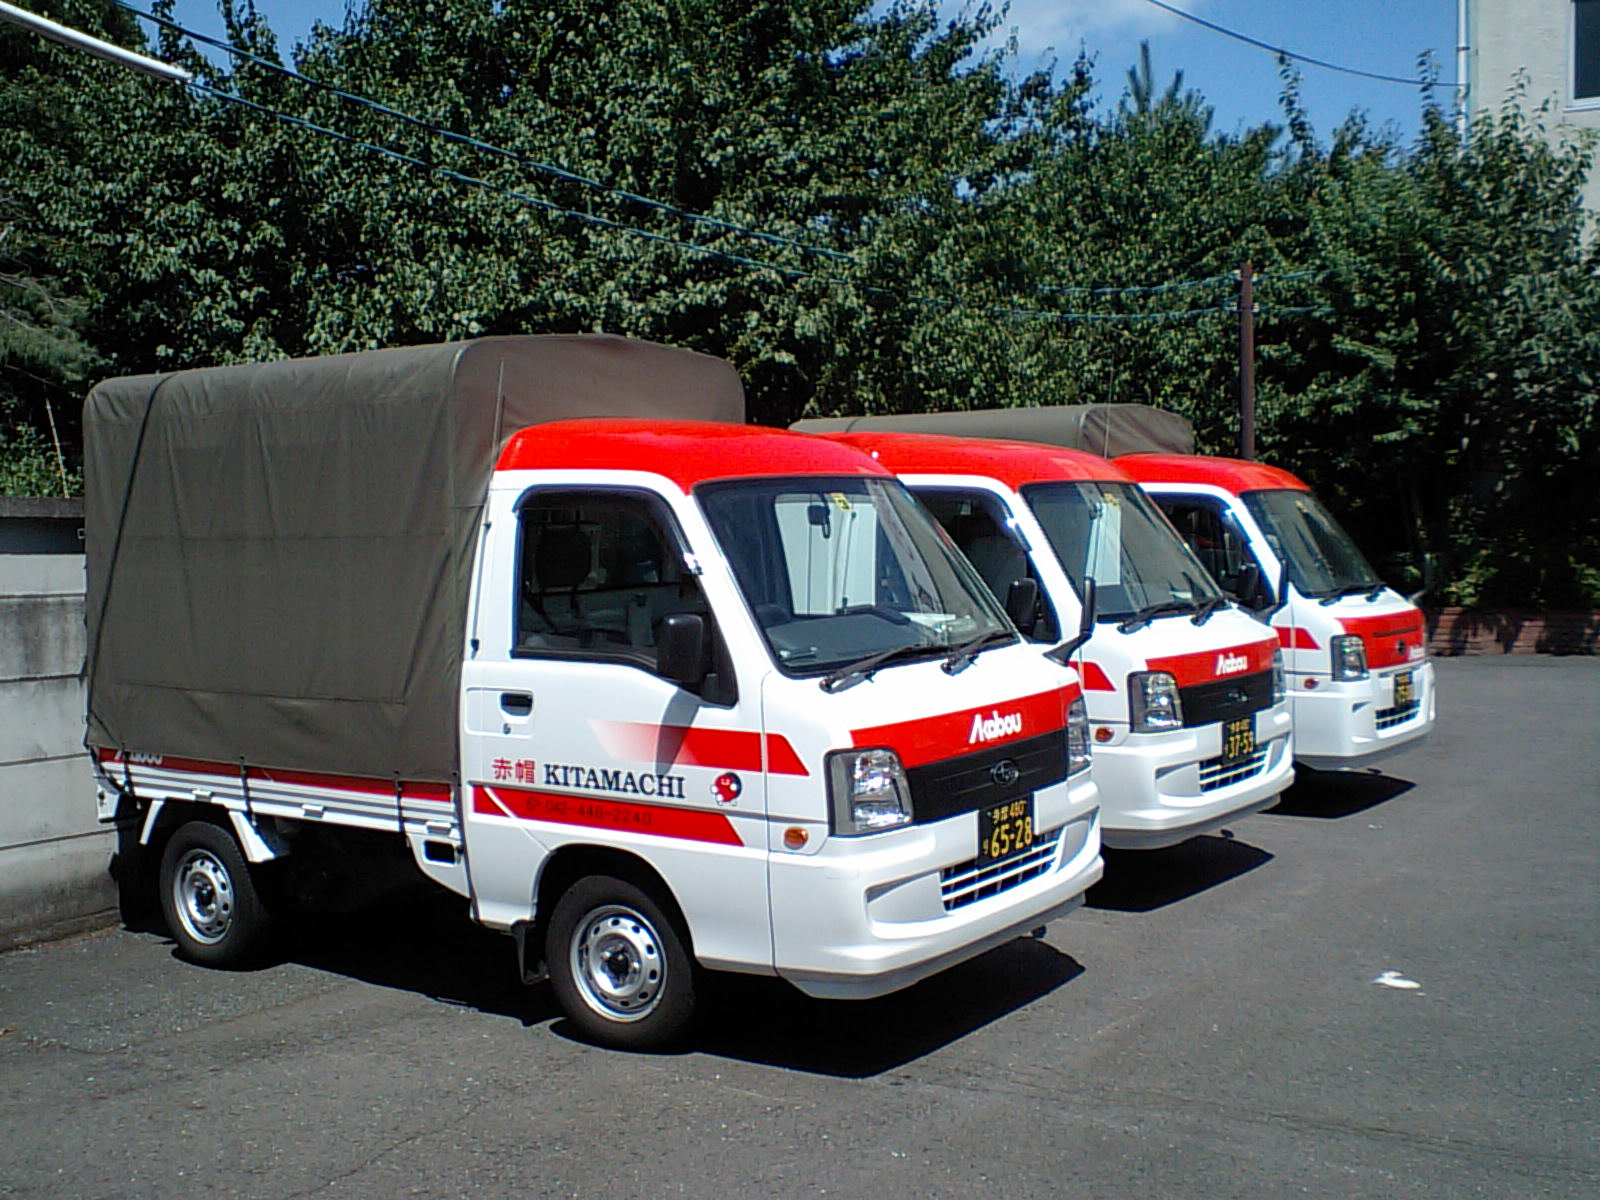 東京から伊豆への引越し 東京から伊豆への配送で節約をお約束する赤帽北町運送です